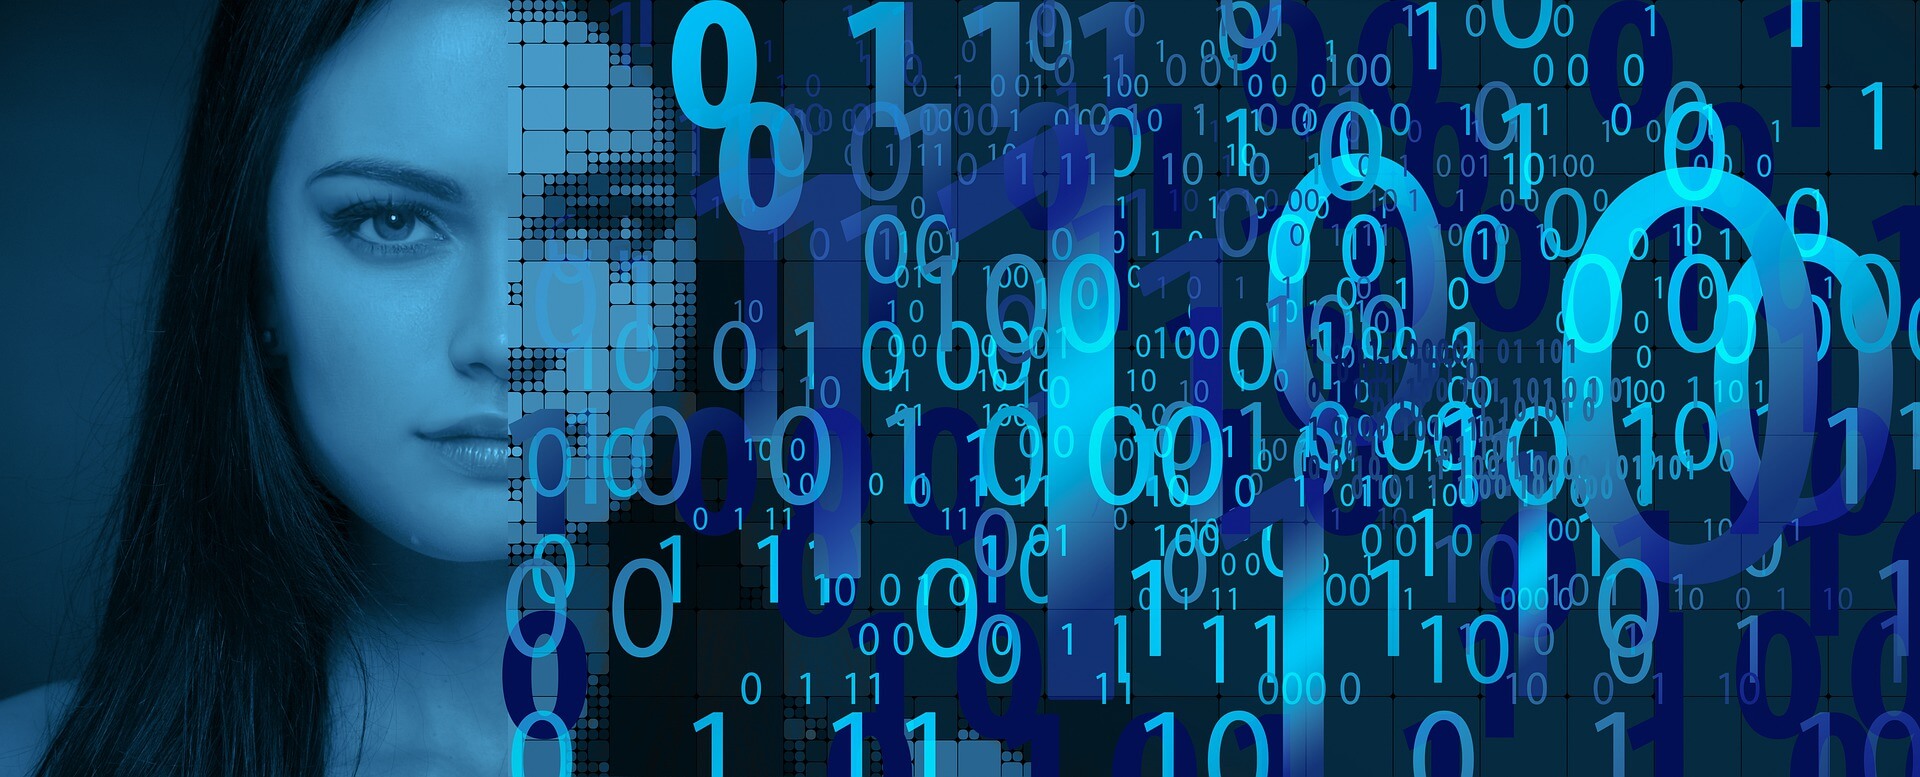 图片展现了一位女性的侧脸，背景是蓝色调的数字和锁形状的图案，给人一种科技感和数据安全的主题。